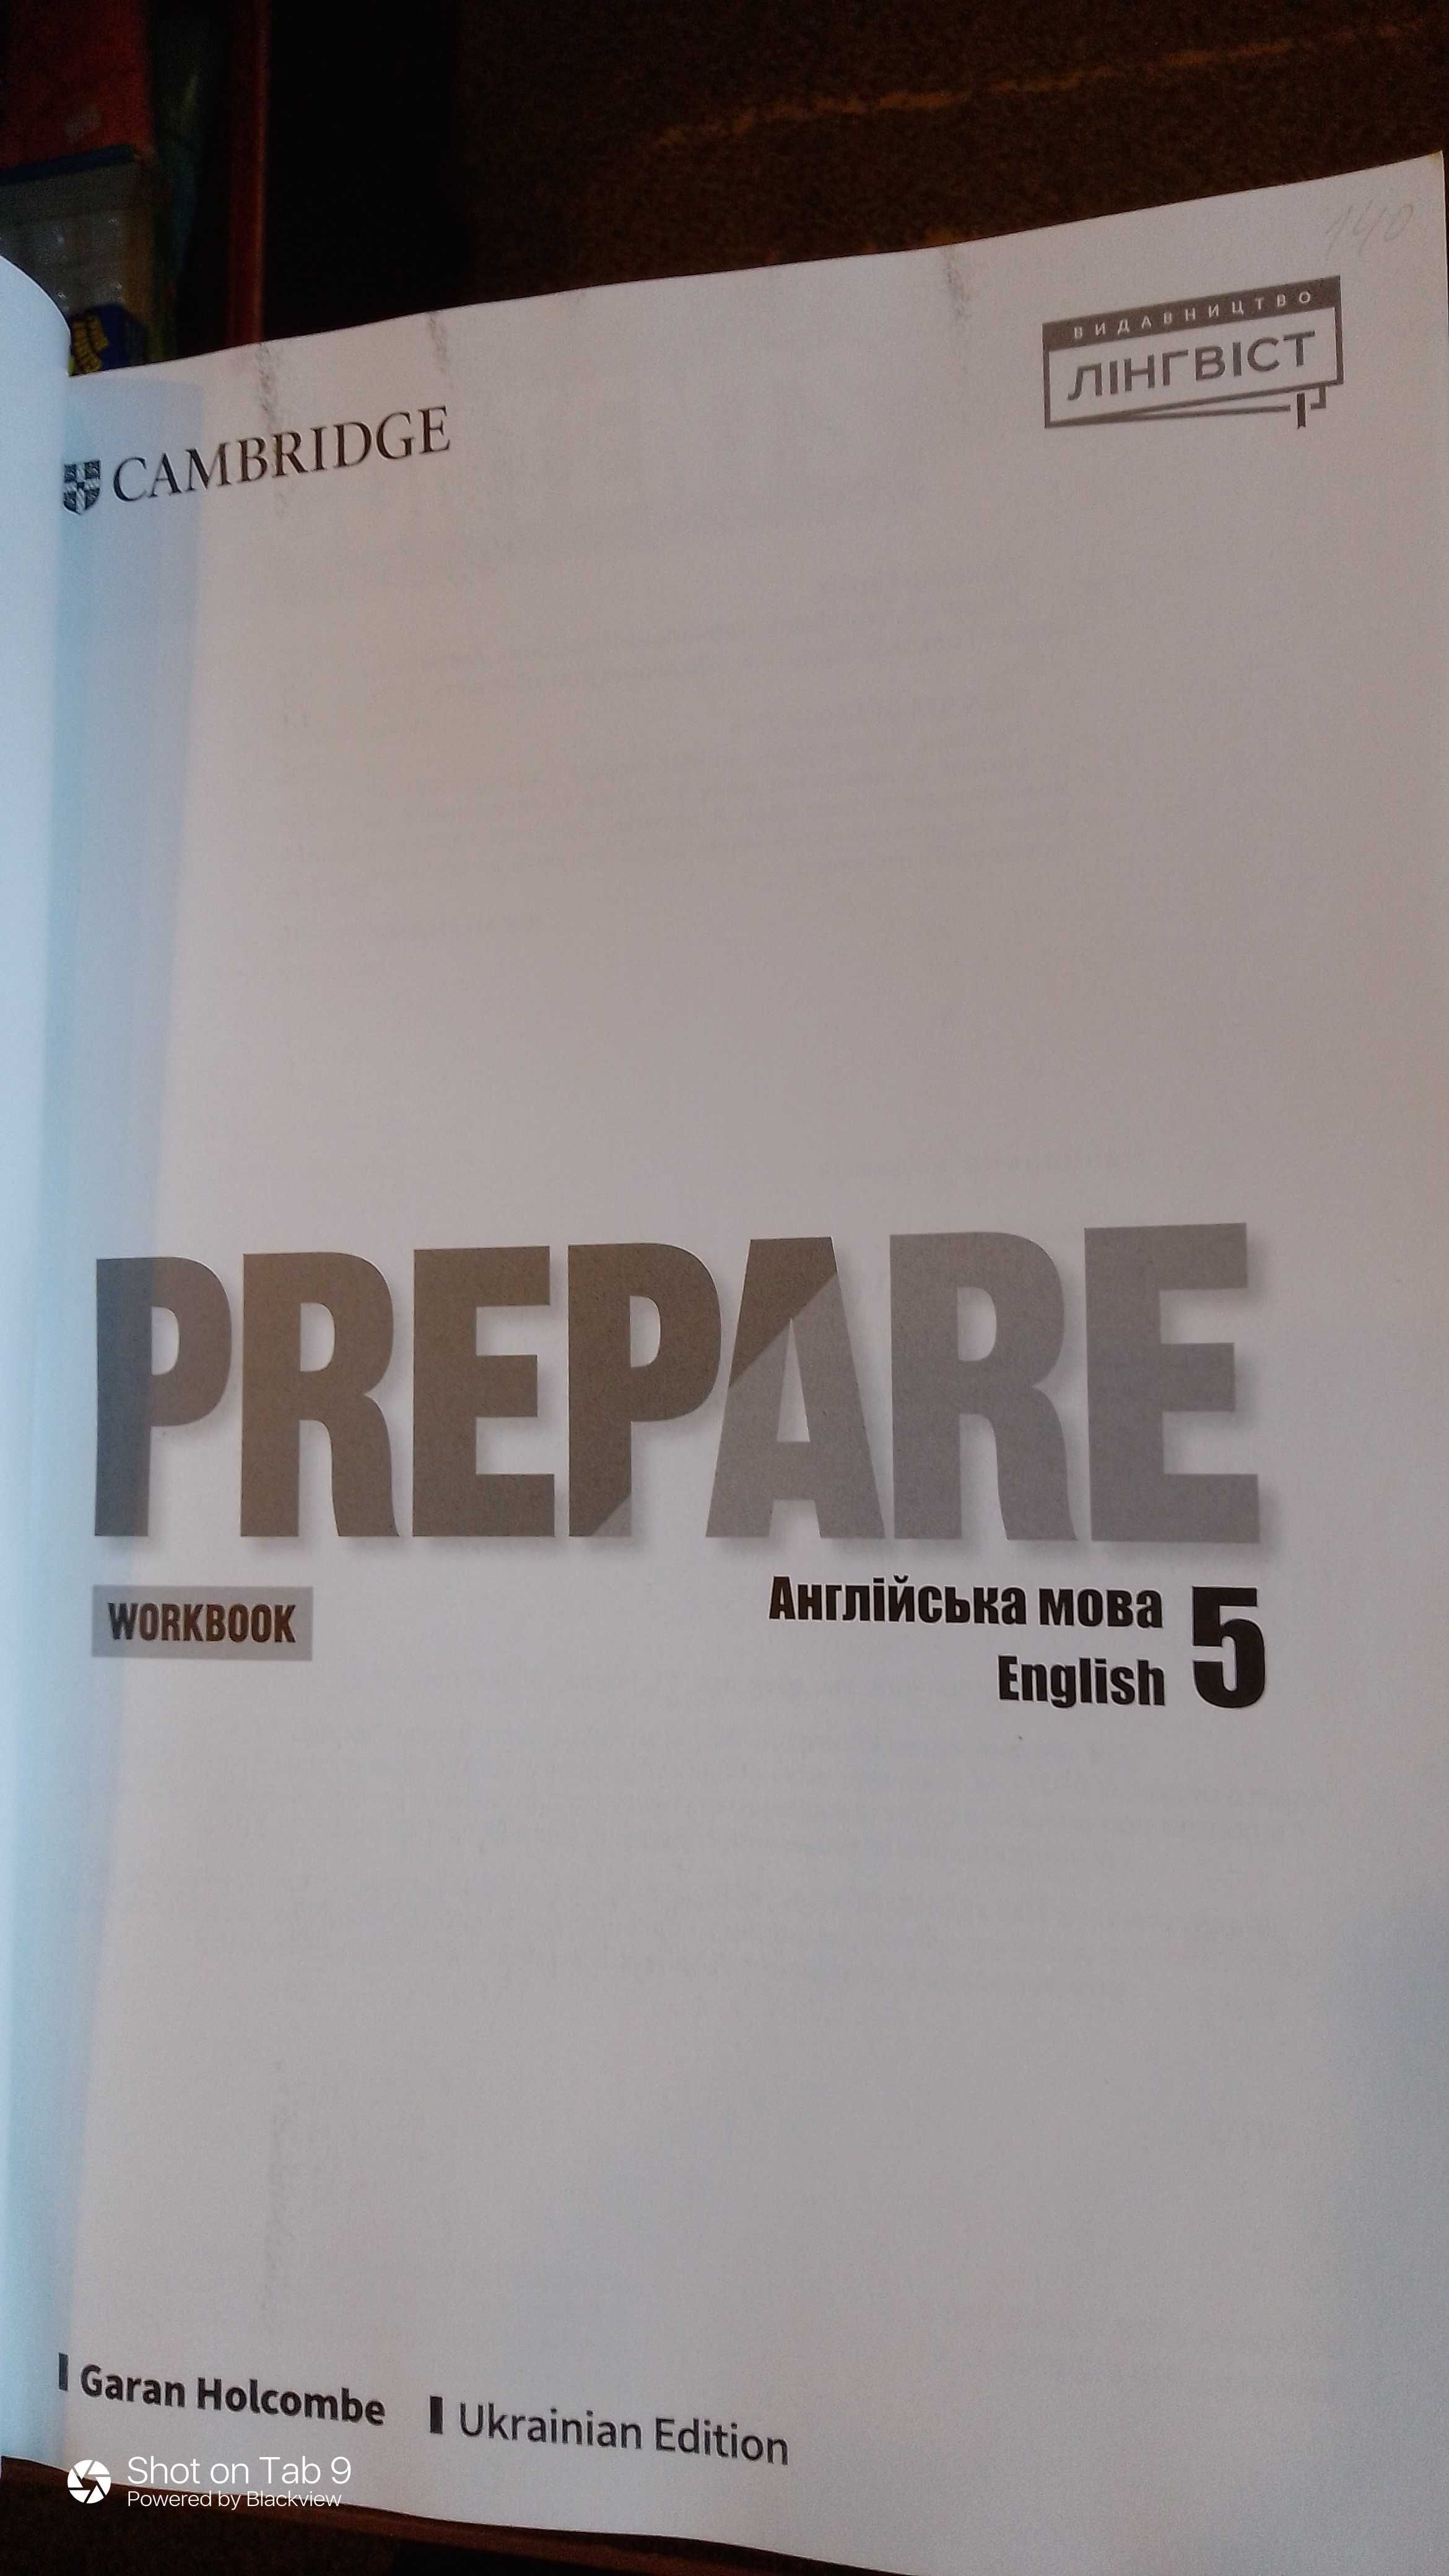 Робочий зошит з англійської мови для учнів 5 класу Prepare.  Лінгвіст.